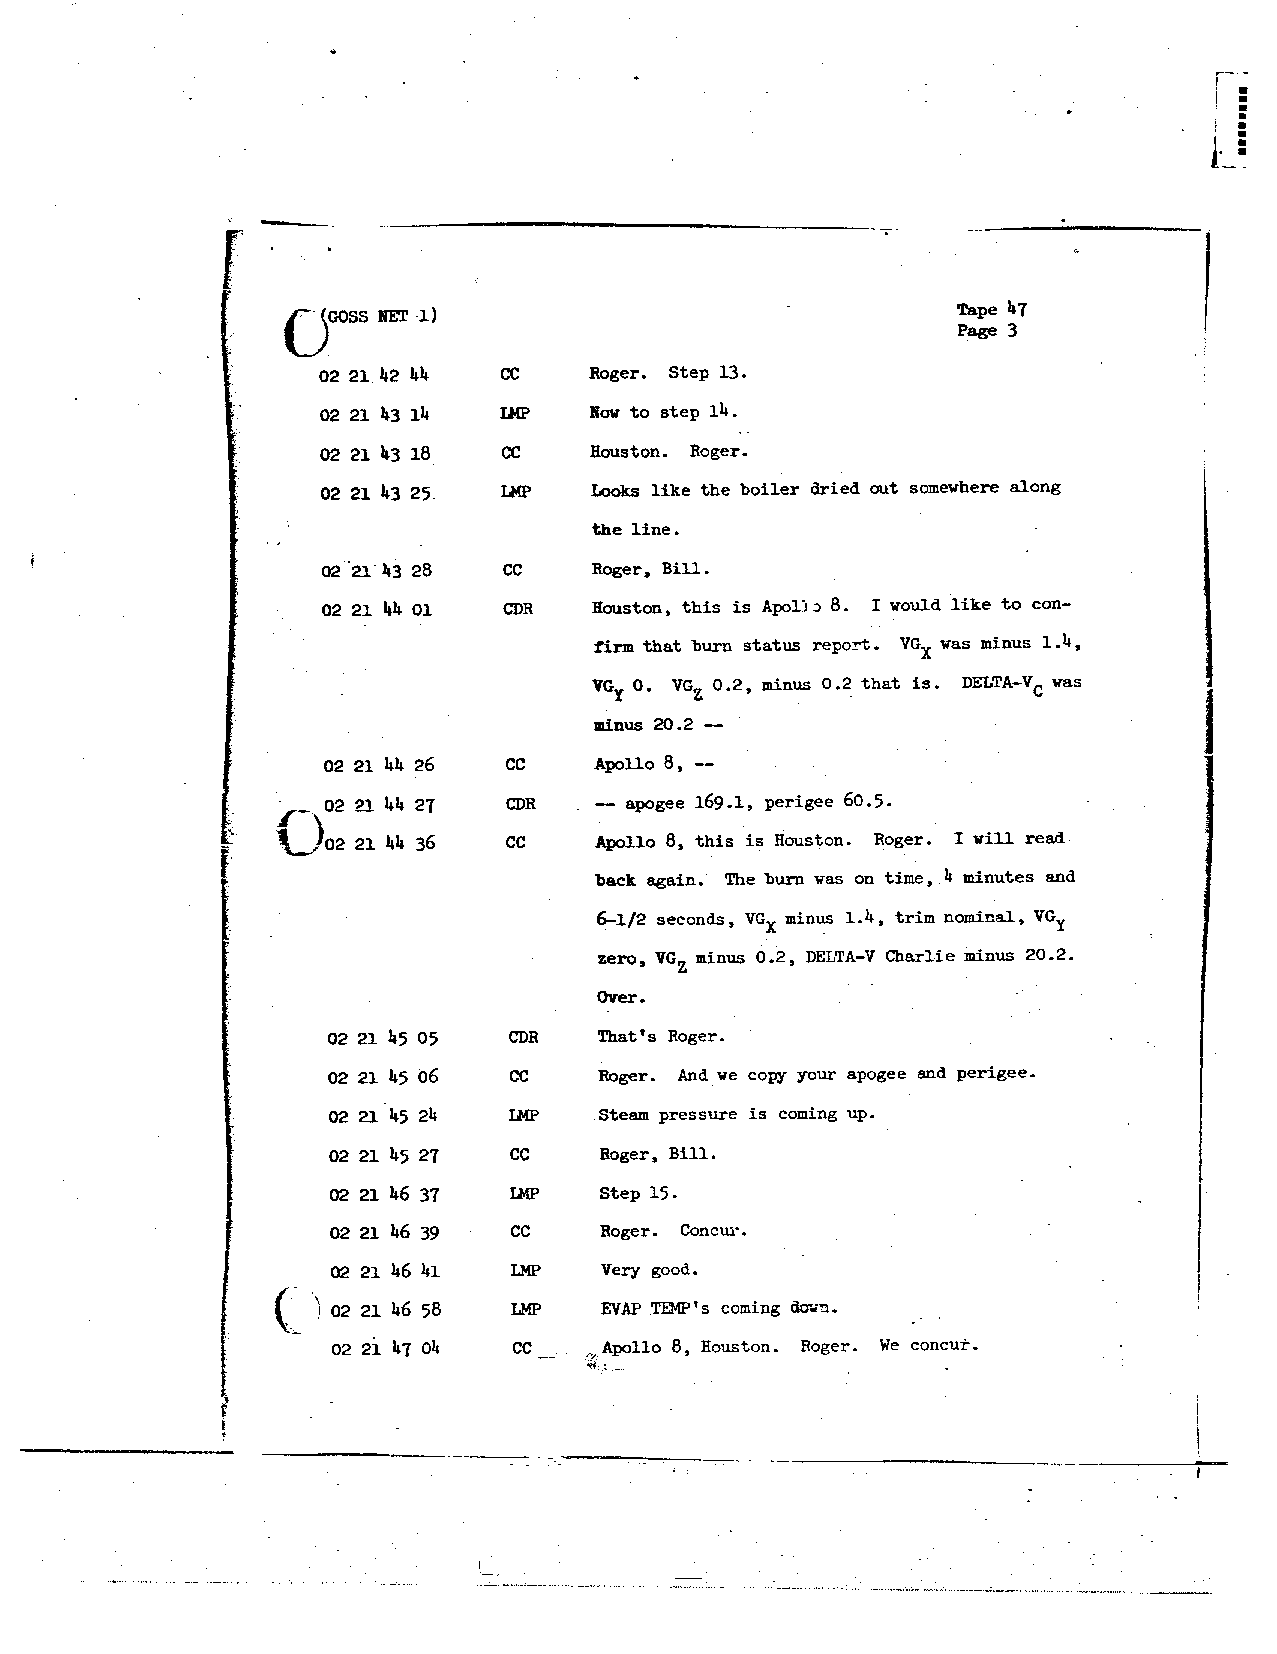 Page 360 of Apollo 8’s original transcript